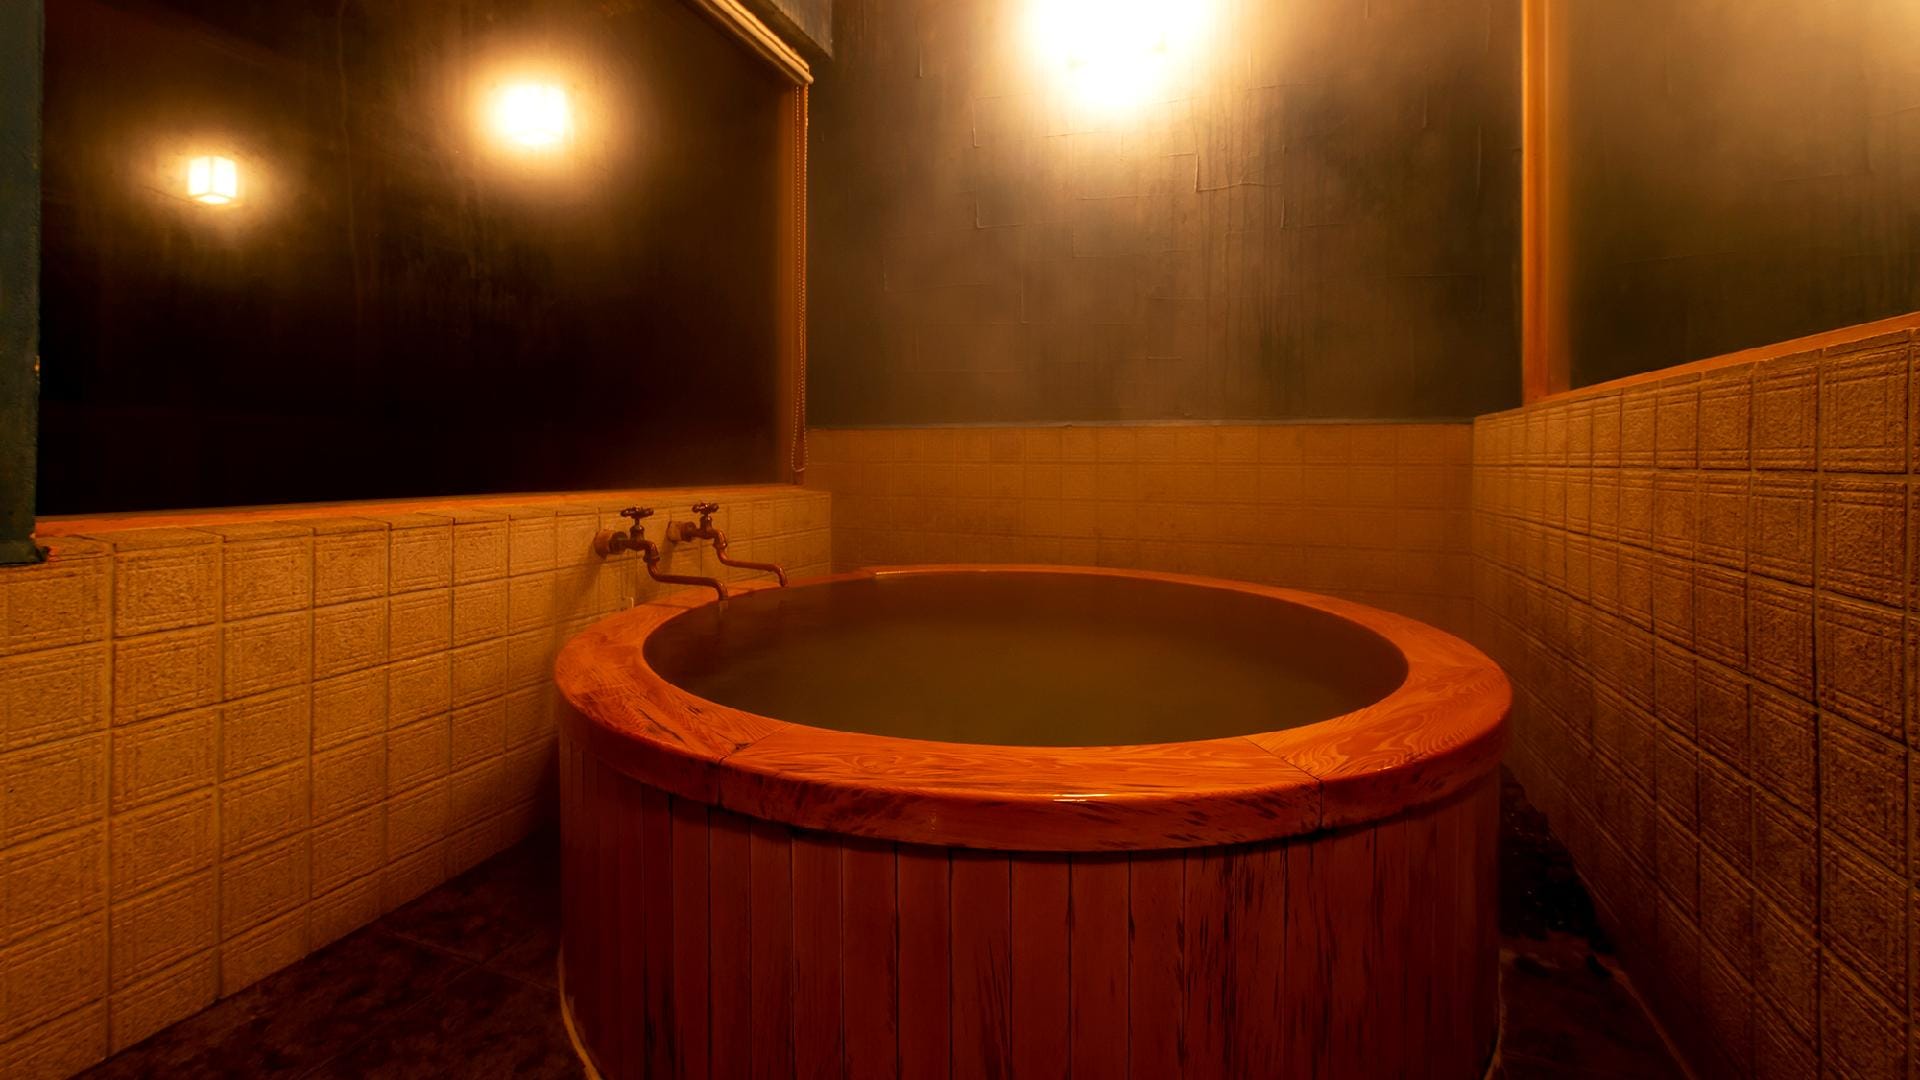 ตัวอย่างบ่ออาบน้ำในร่มมาตรฐานญี่ปุ่นสมัยใหม่